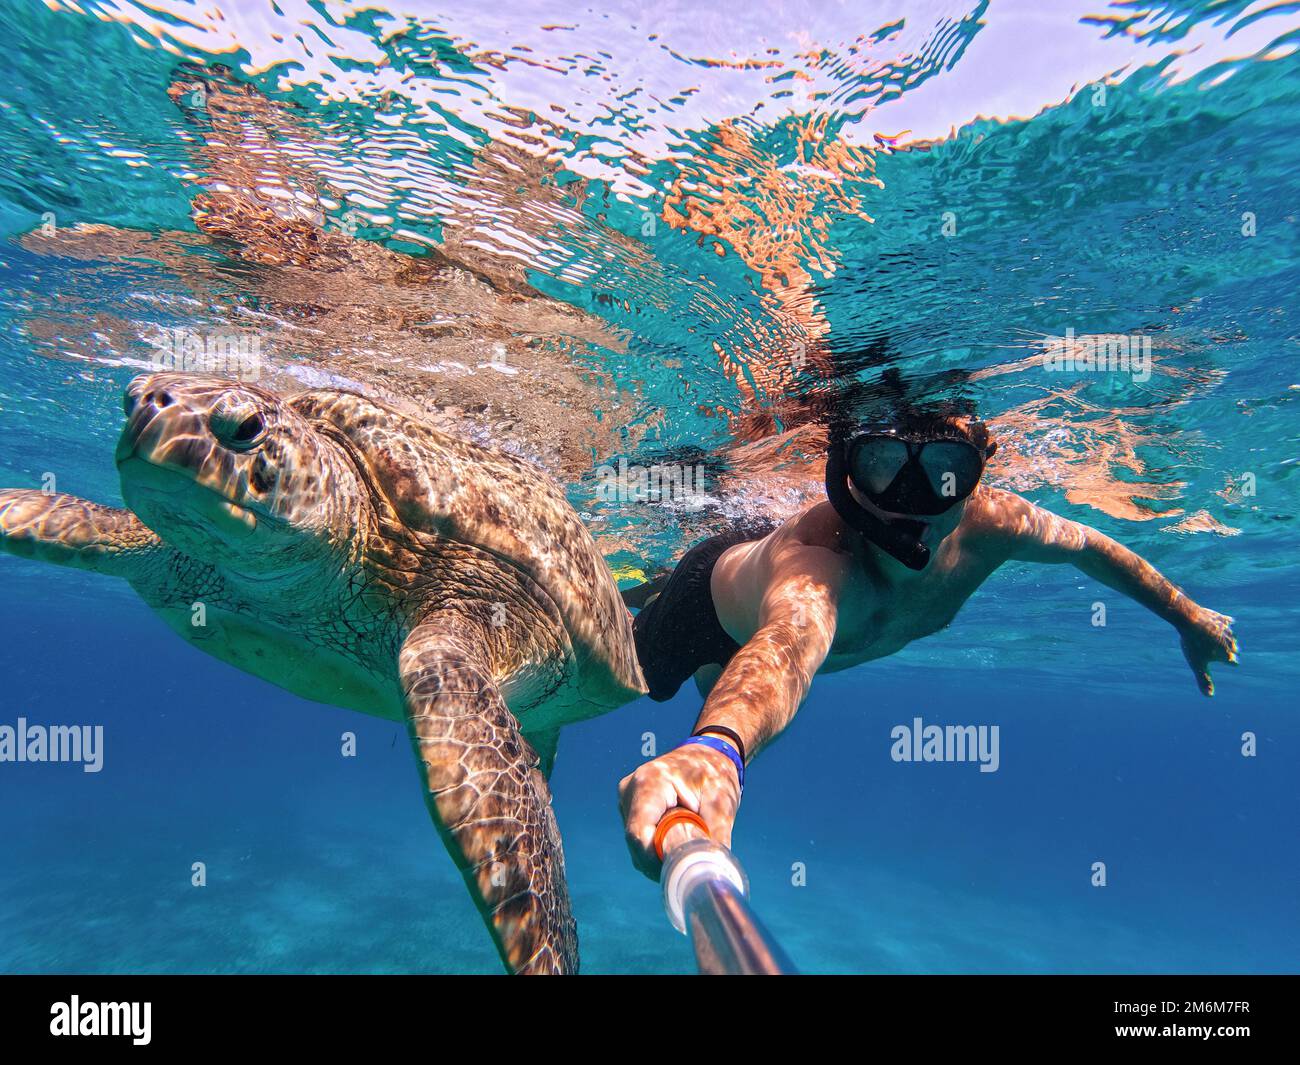 Faites de la plongée libre avec une tortue de mer verte, Marsa Alam, Égypte Banque D'Images